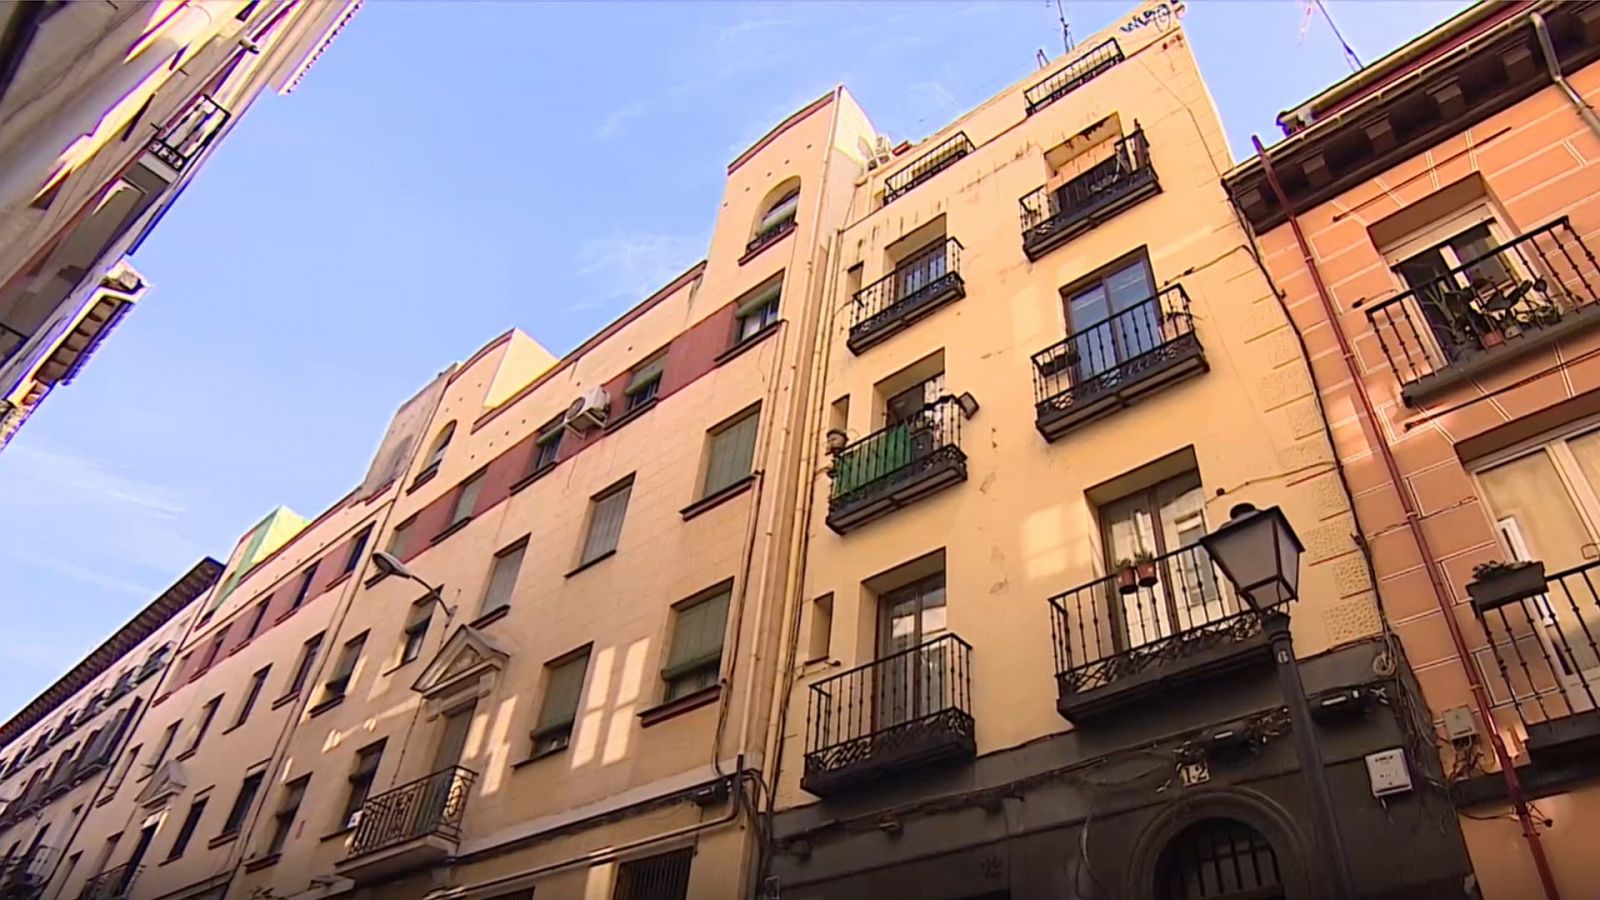 Los vecinos de un bloque de Madrid, desalojados en 24 horas: "Se ha derrumbado el suelo"